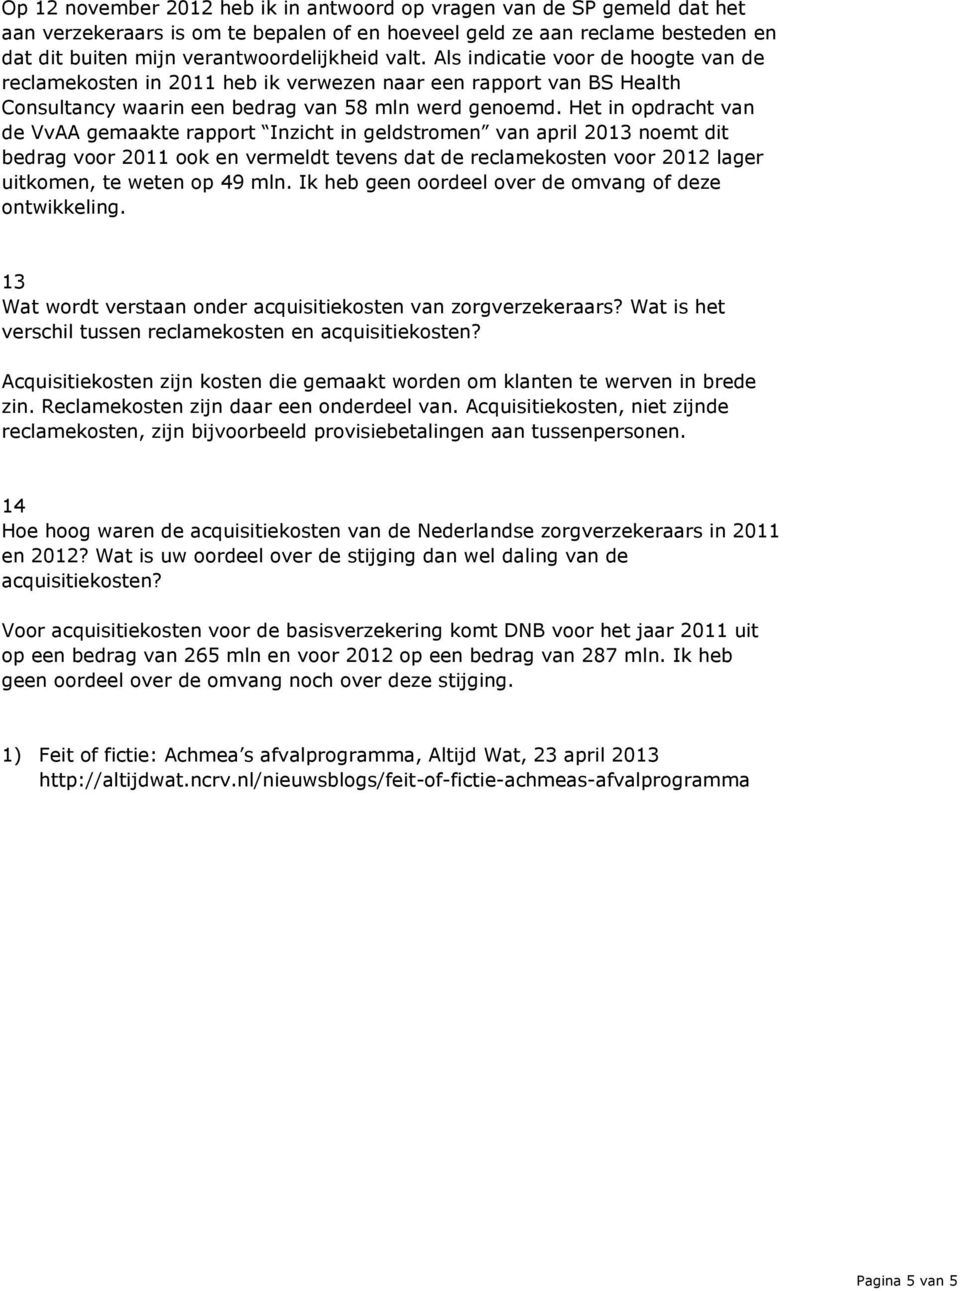 Het in opdracht van de VvAA gemaakte rapport Inzicht in geldstromen van april 2013 noemt dit bedrag voor 2011 ook en vermeldt tevens dat de reclamekosten voor 2012 lager uitkomen, te weten op 49 mln.